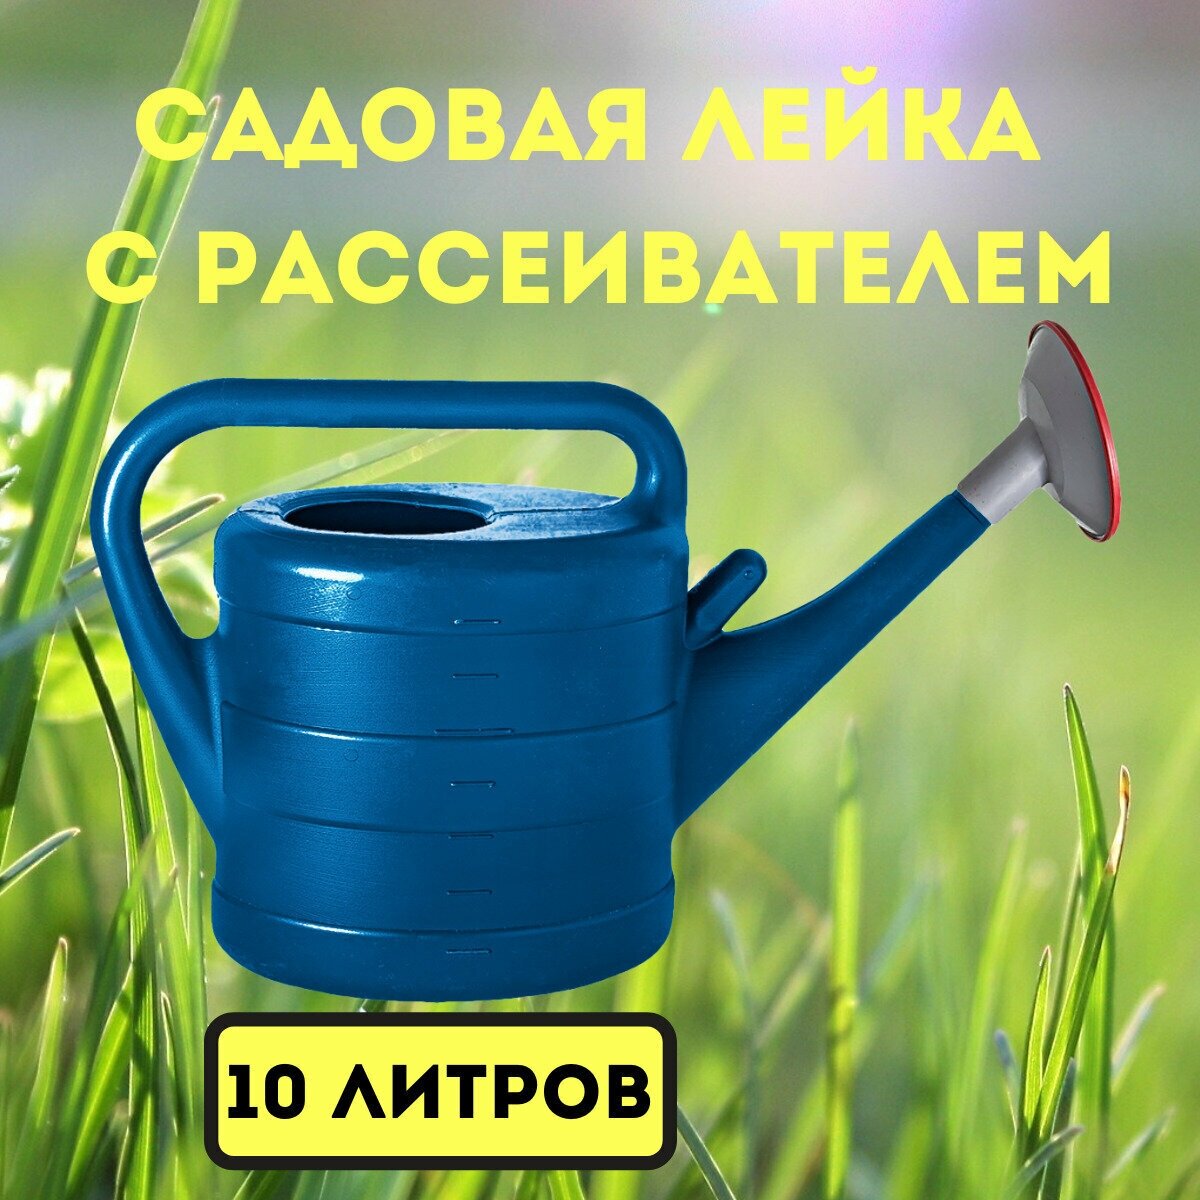 Лейка садовая ГеоПласт голубая 10 литров с рассеивателем